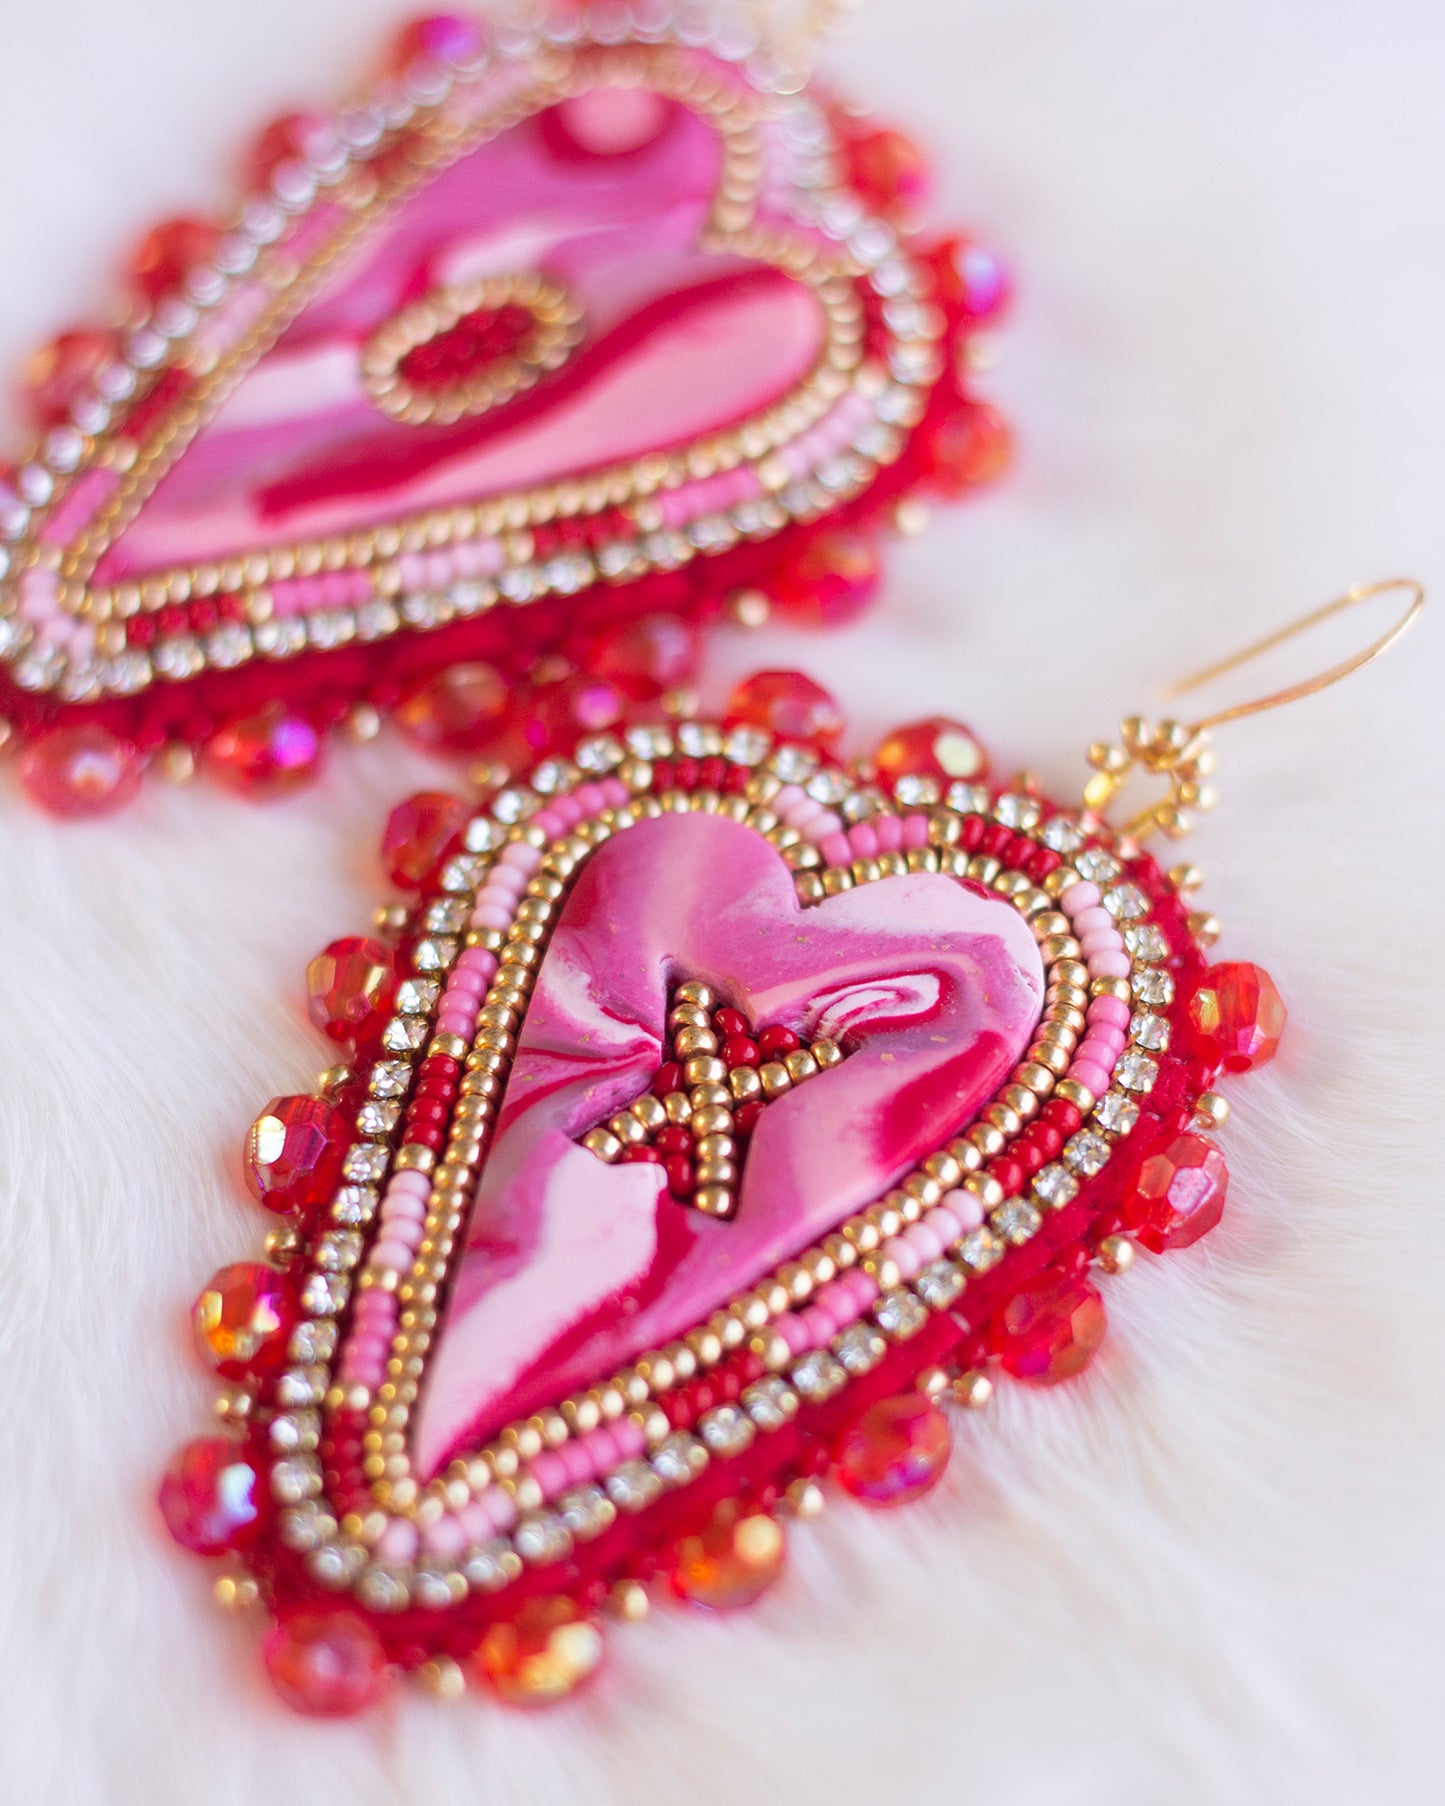 XO Heart Earrings